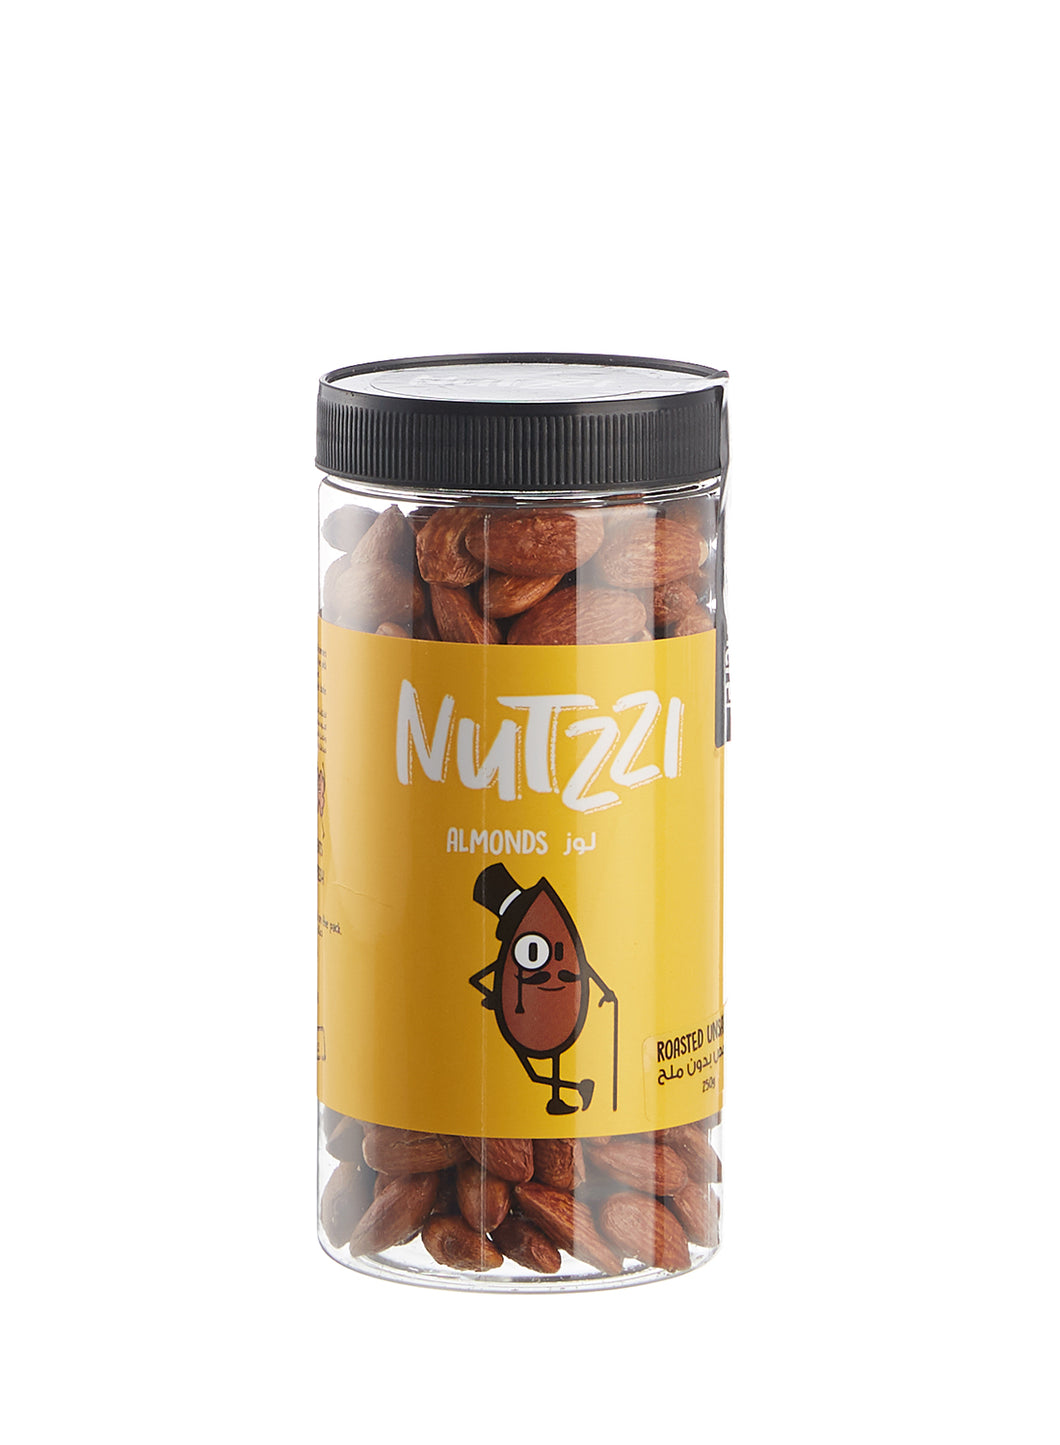 Nutzzi Roasted Almonds (Unsalted) -  لوز ناتزي محمص (بدون ملح)